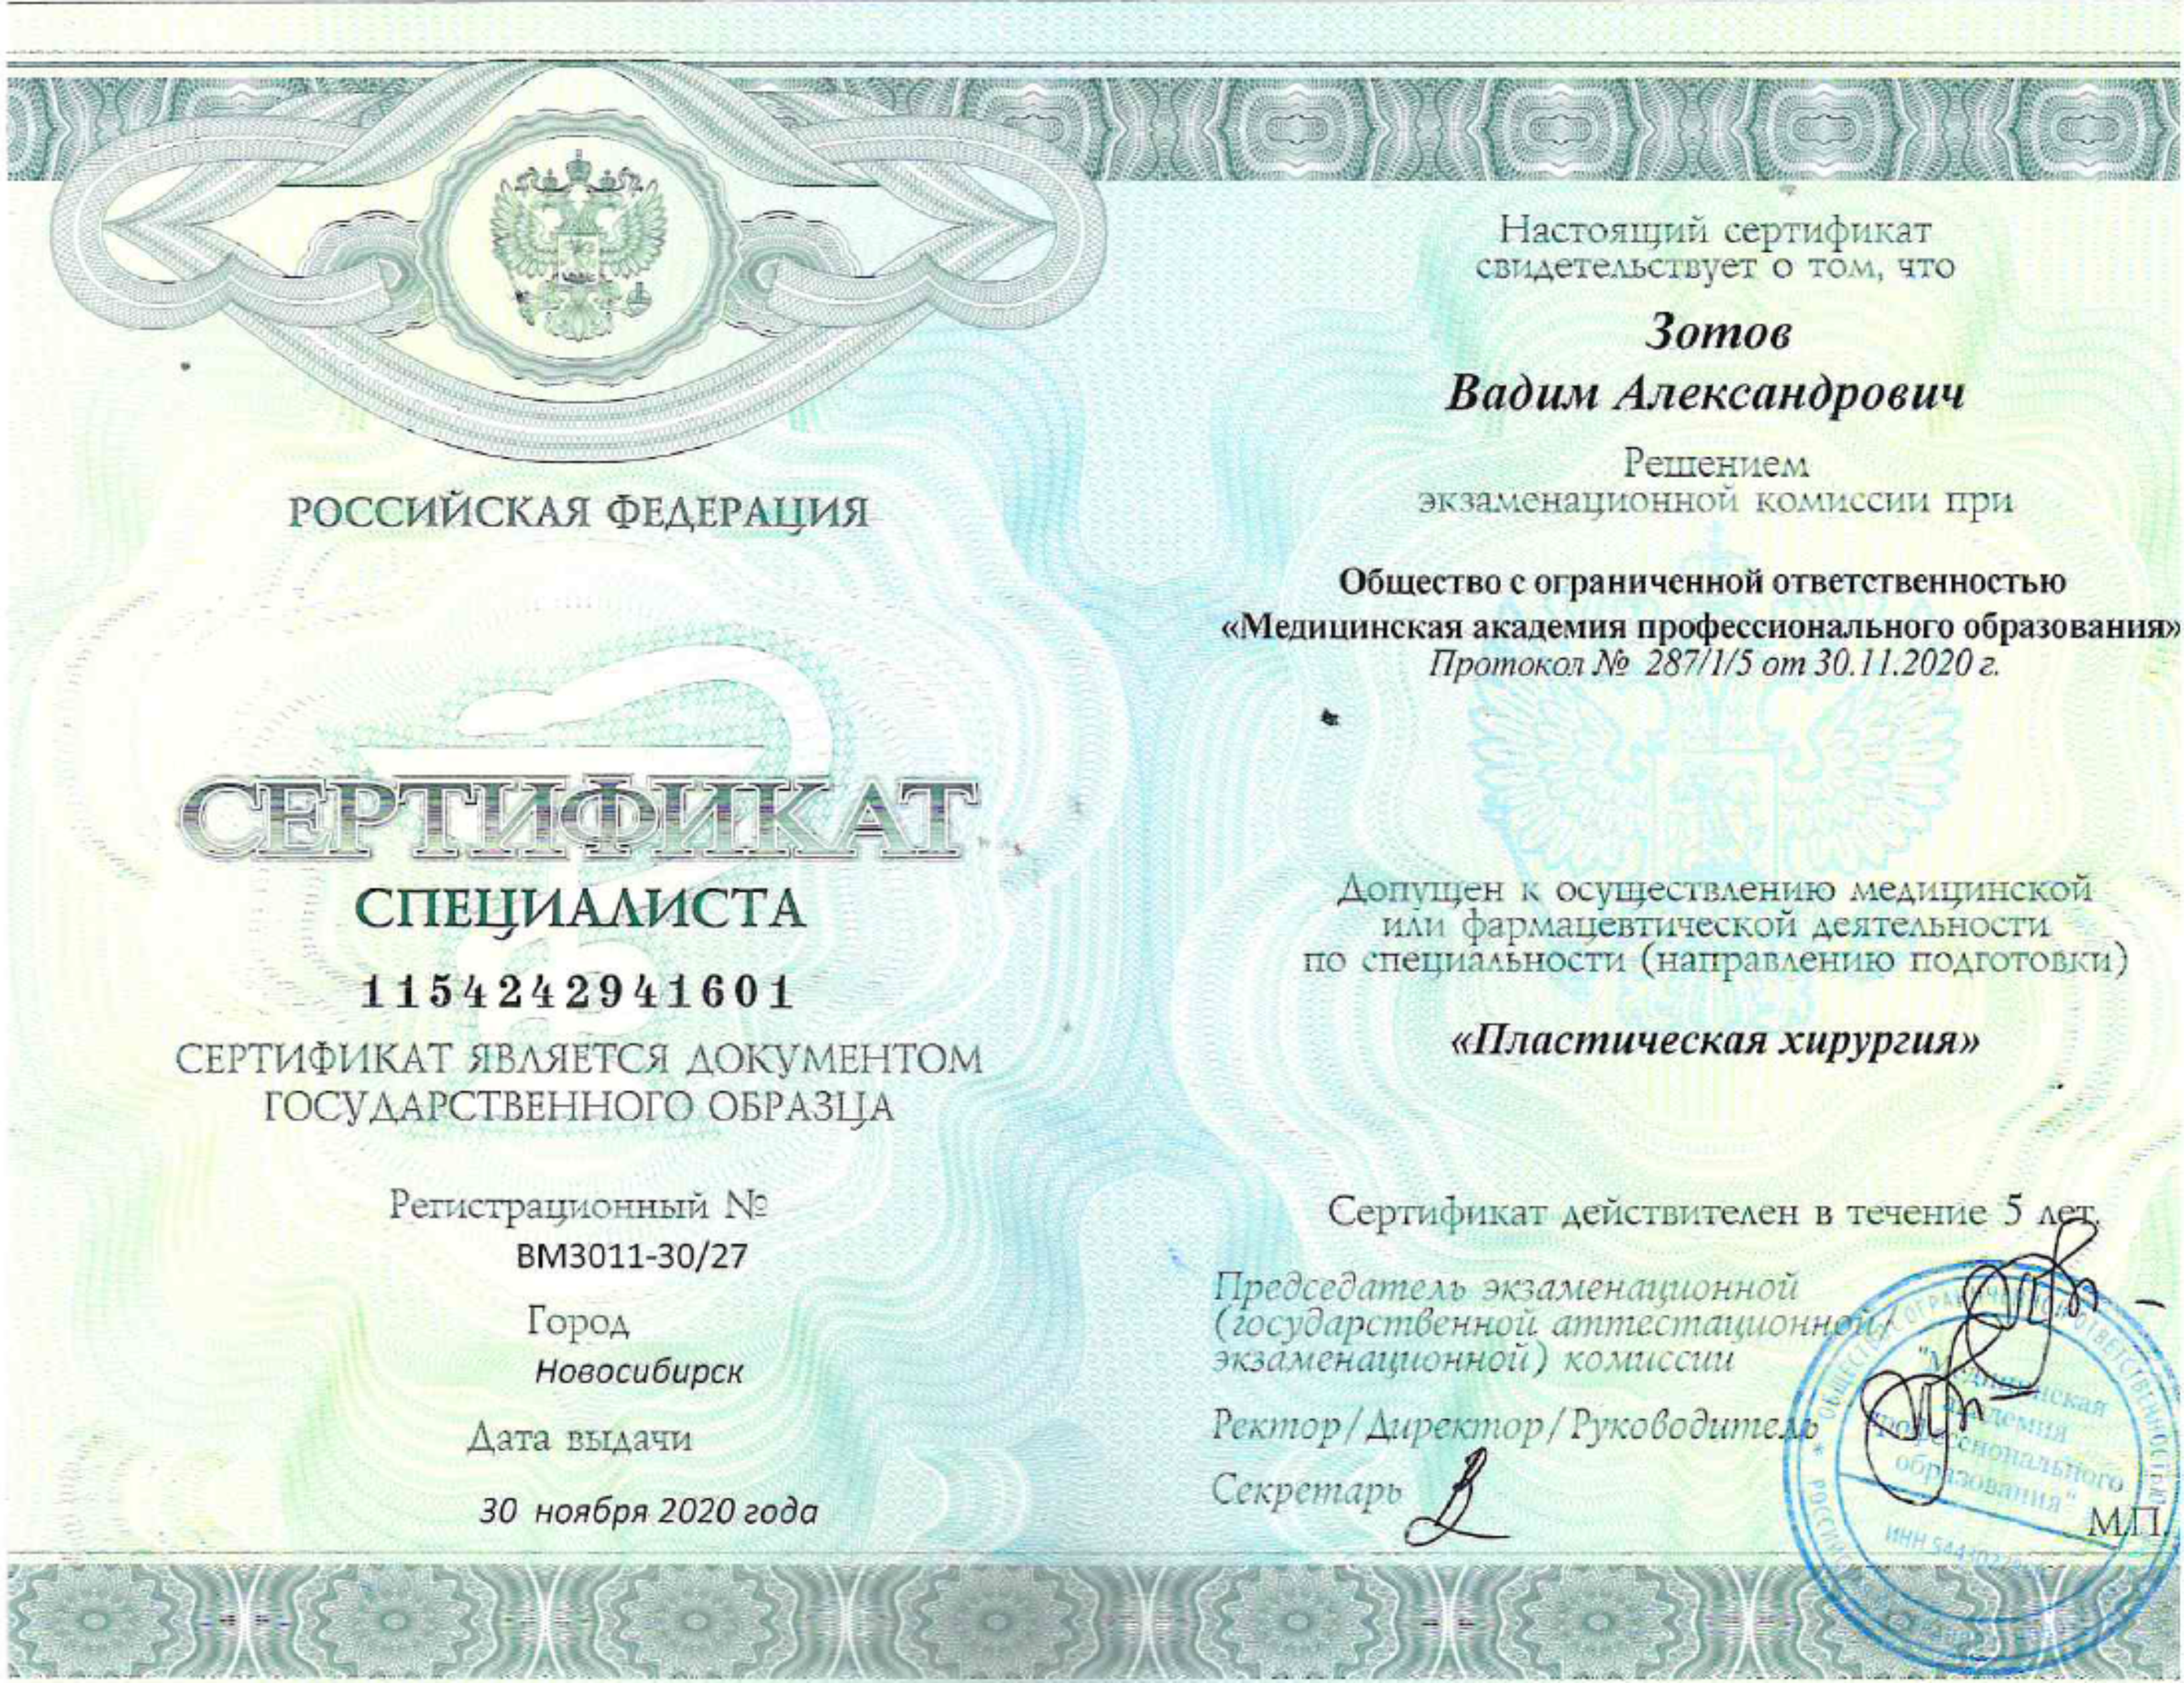 Сертификат "Пластическая хирургия" 2020 г.